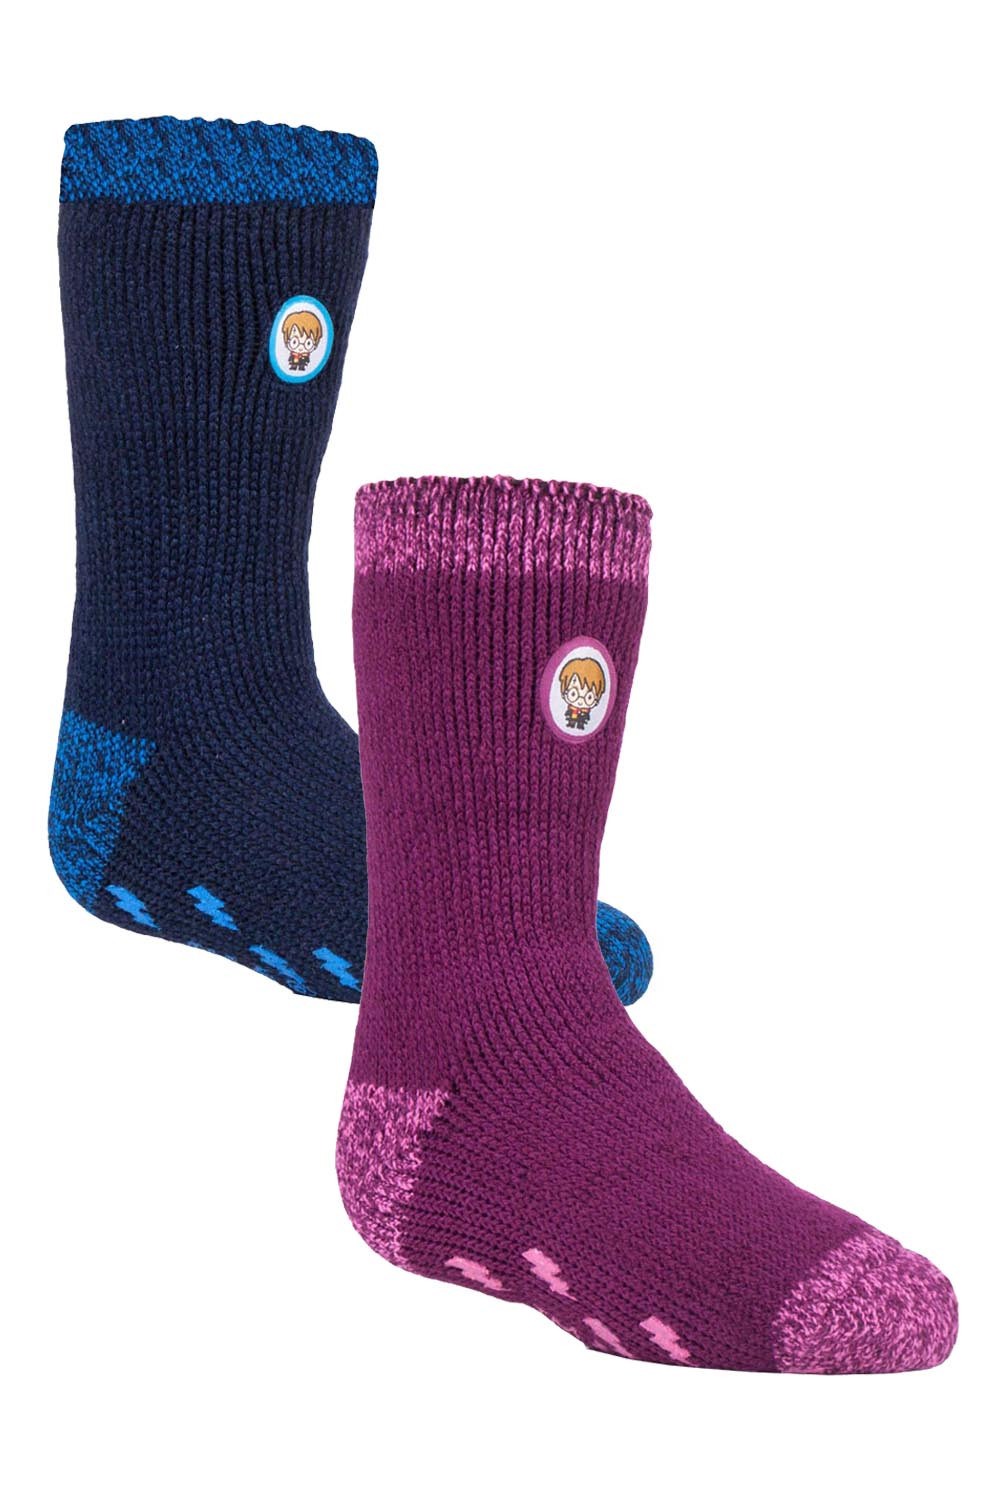 Kids Thermal Harry Potter Slipper Socks 2-Pack -